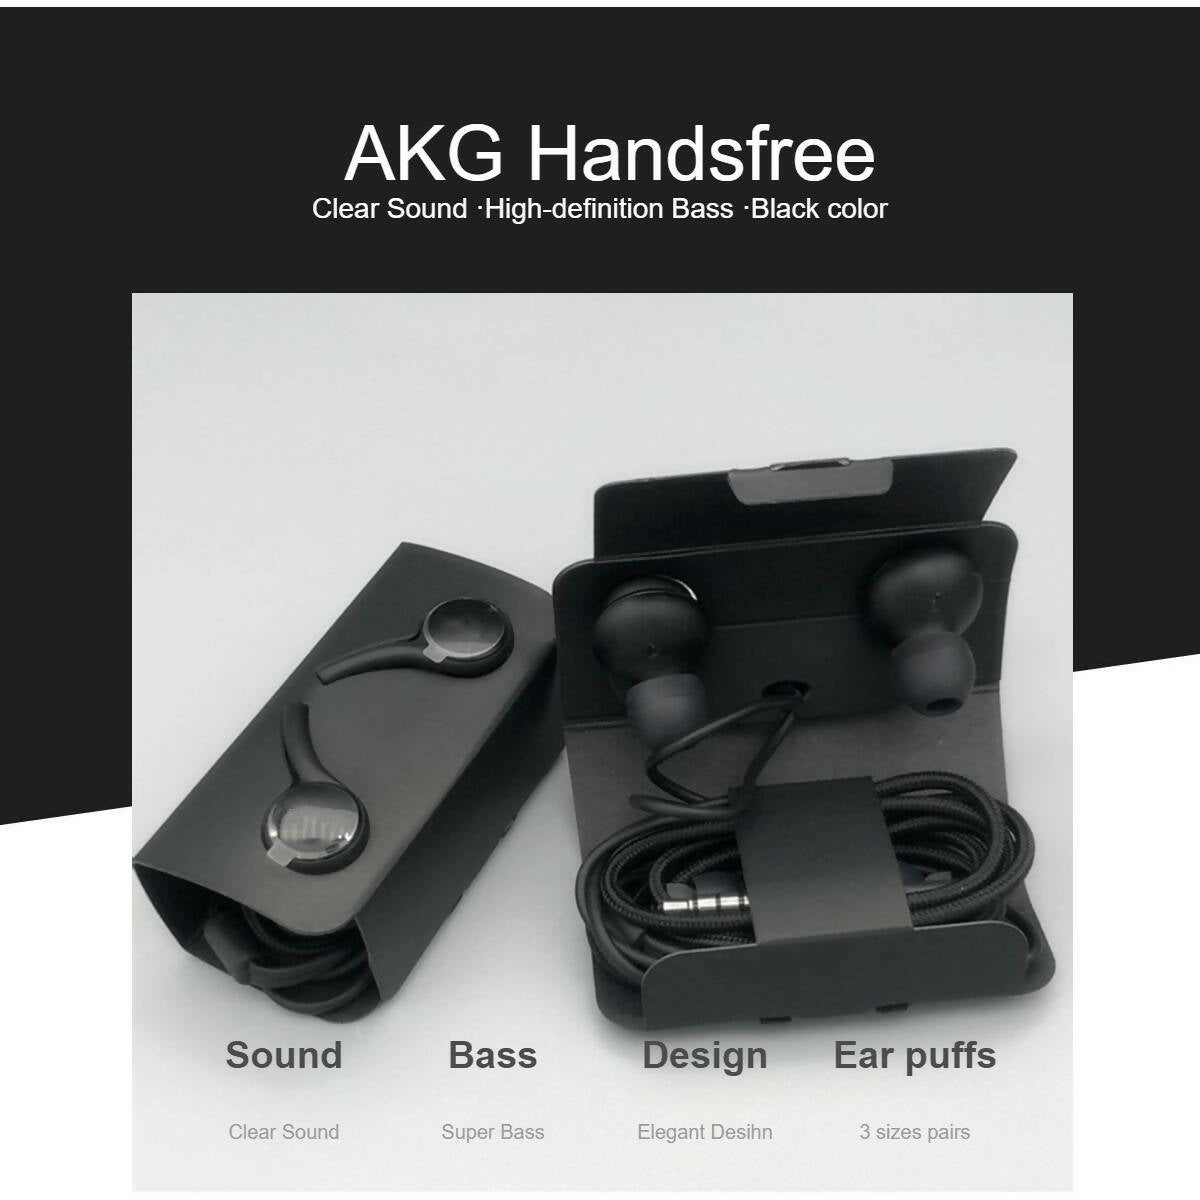 AKG handsfree With Best Bass Universal Handsfree With 3.5mm Headphones jack Black Color - Universal Handsfrees